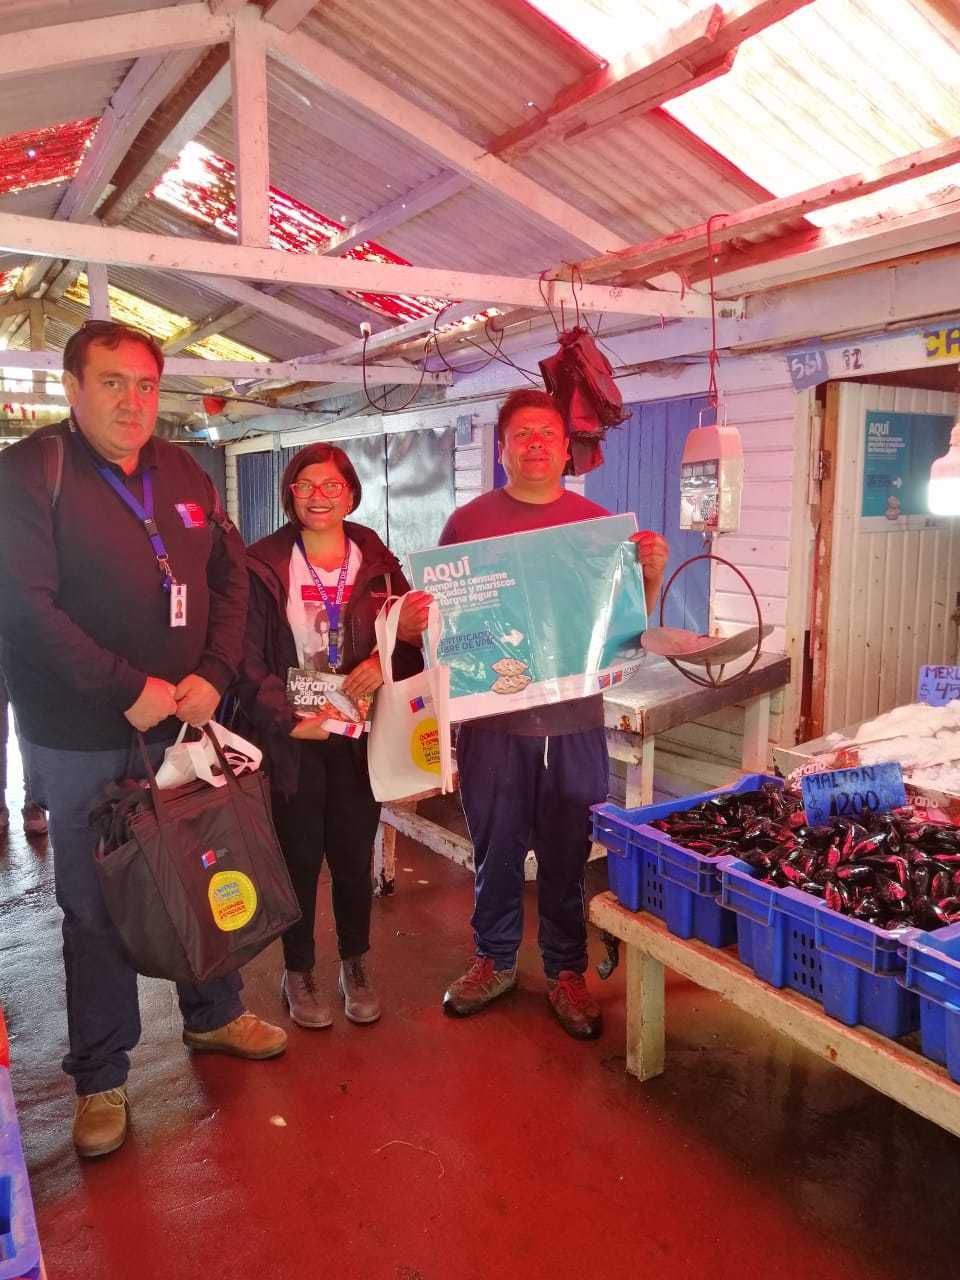 Refuerzan la compra y consumo seguro de mariscos y pescados